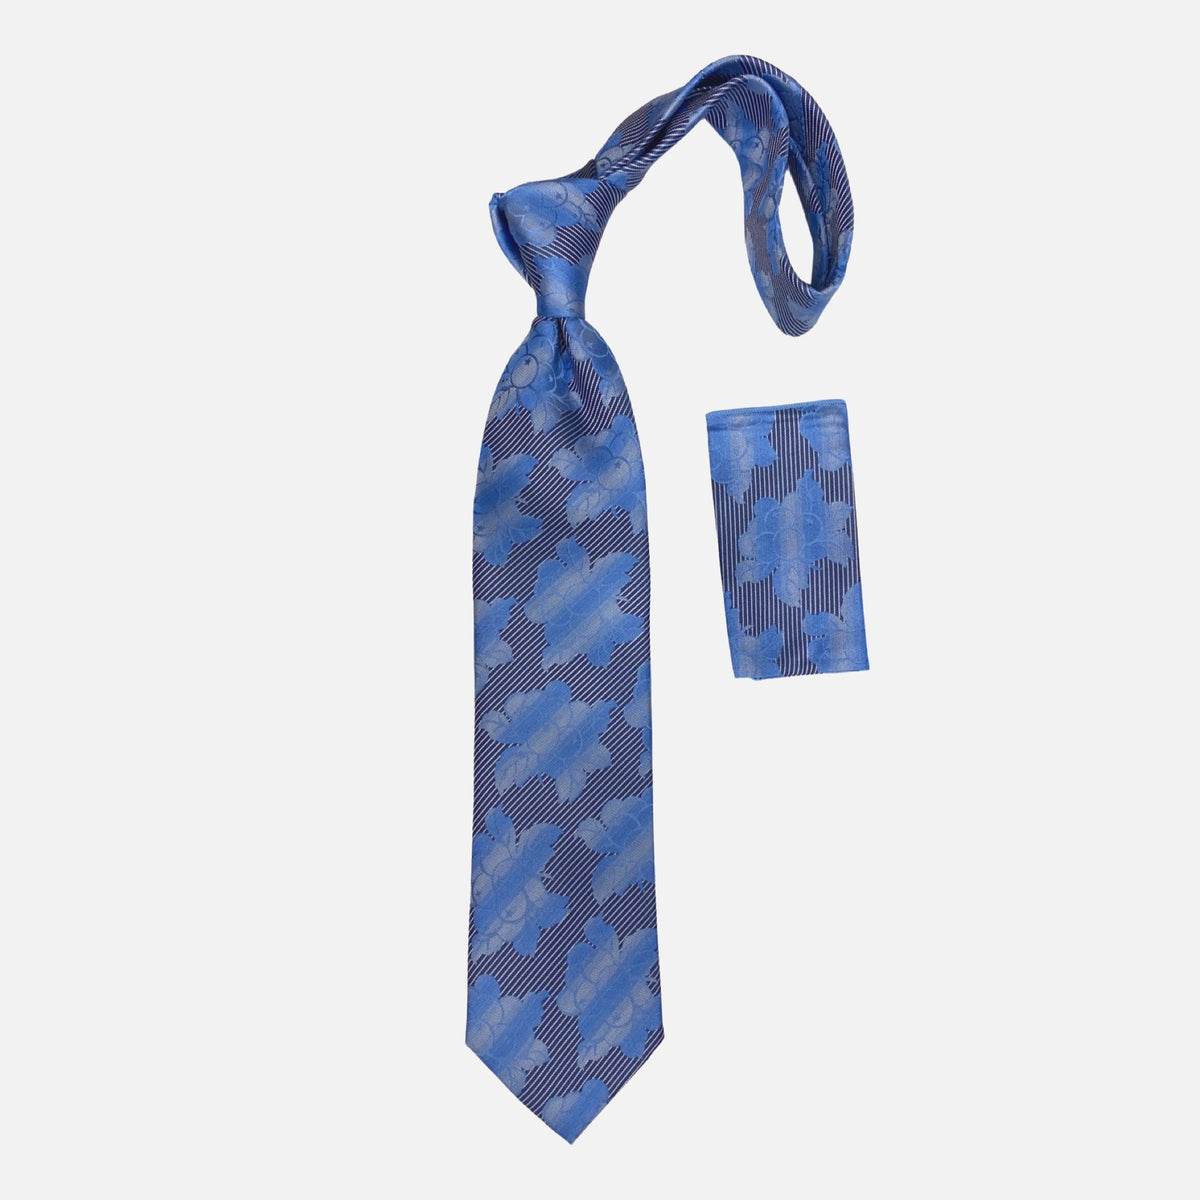 BW2303 Blue silk tie by Steven Land